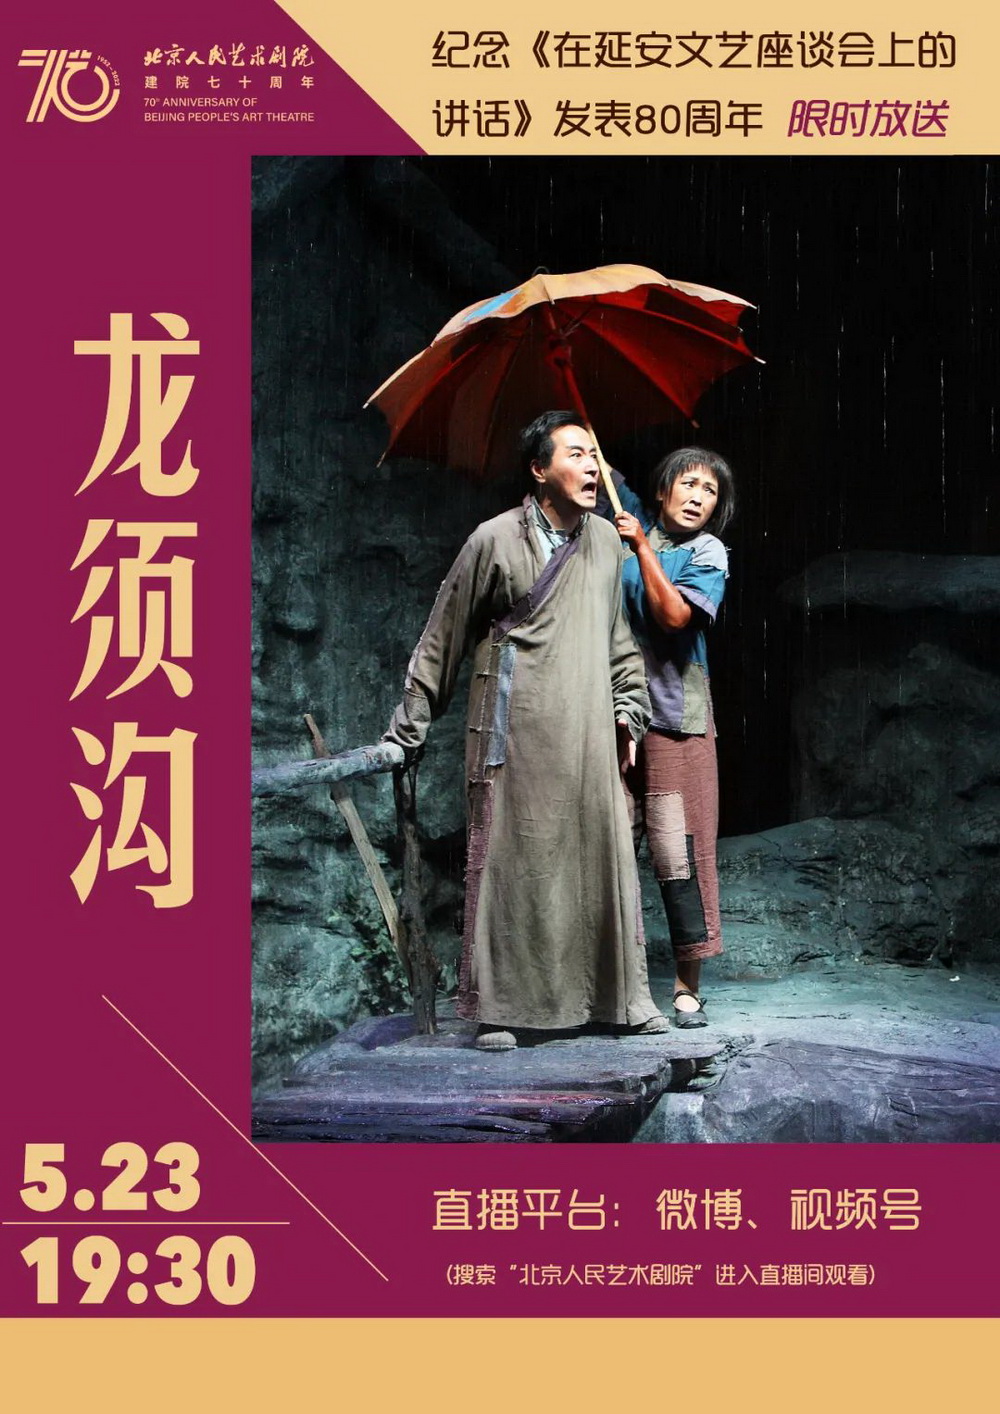 5月23日晚，北京人民艺术剧院通过官方视频号、官方微博等平台，限时放送剧院经典现实主义剧作《龙须沟》的戏剧影像。